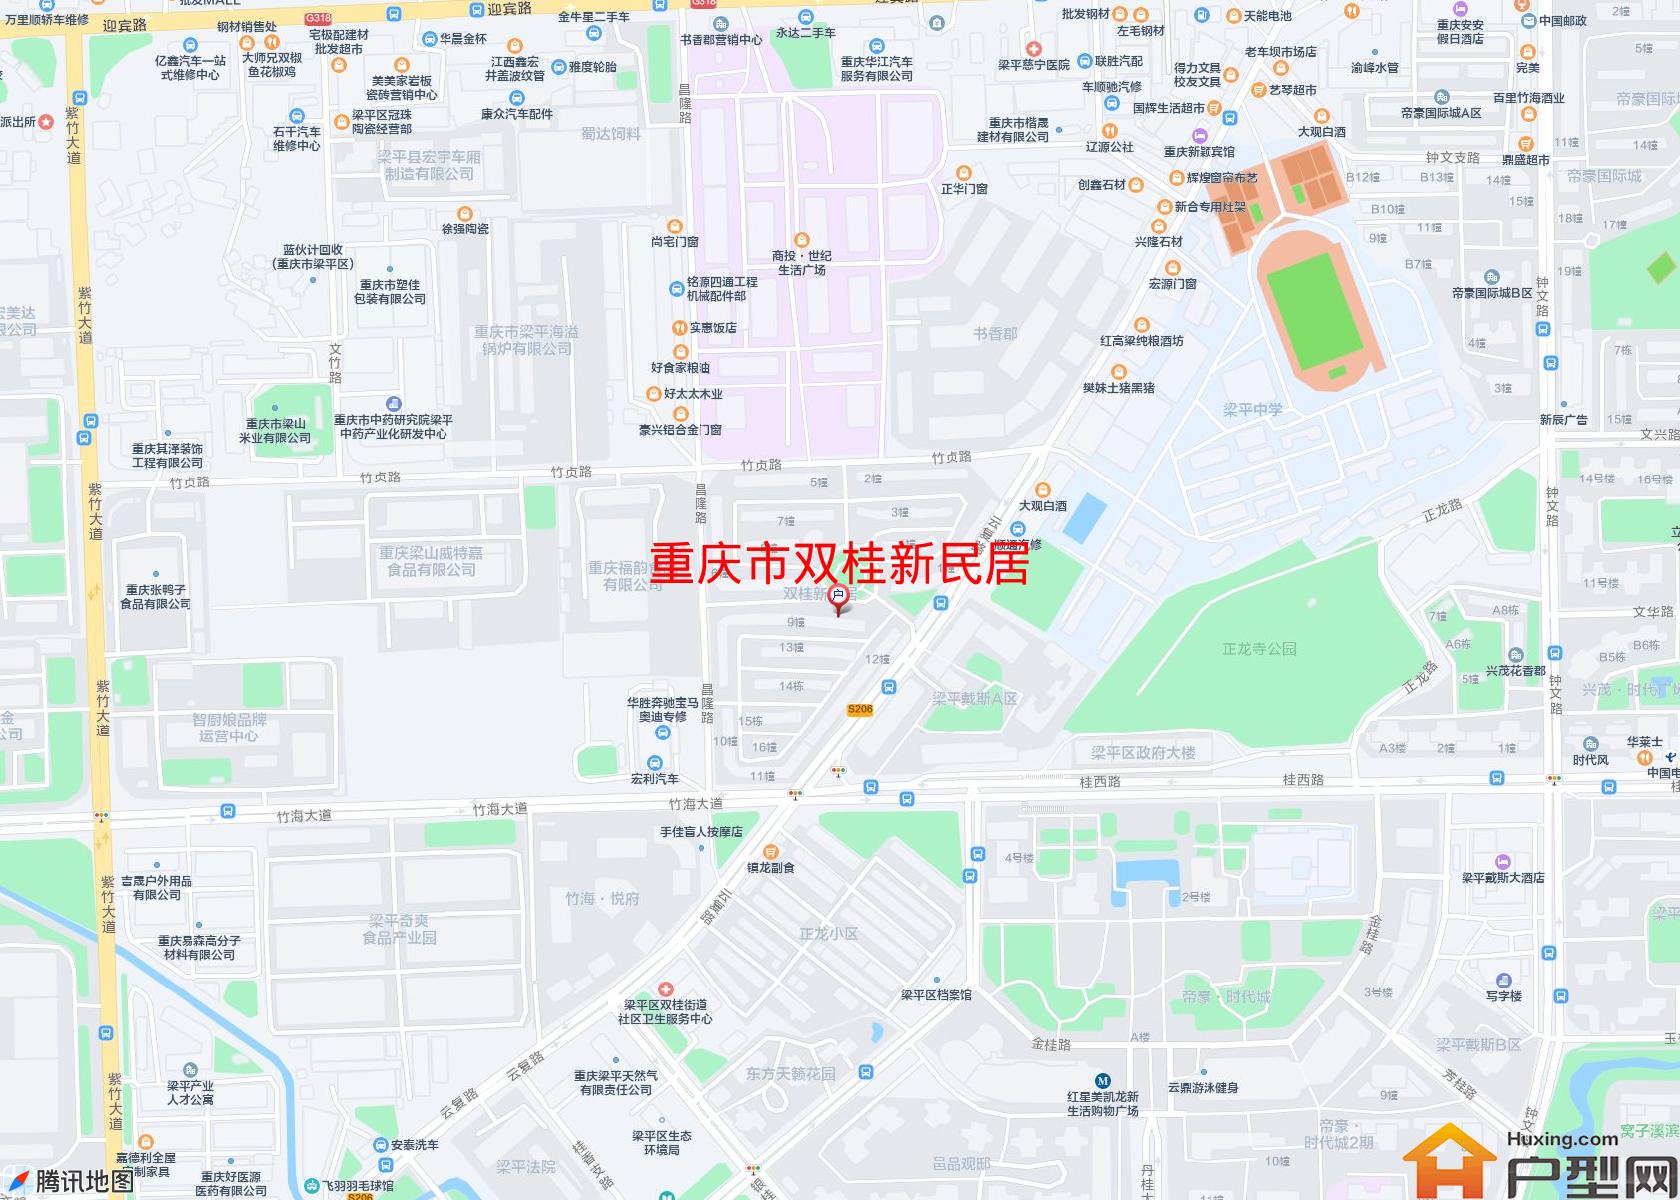 双桂新民居小区 - 户型网